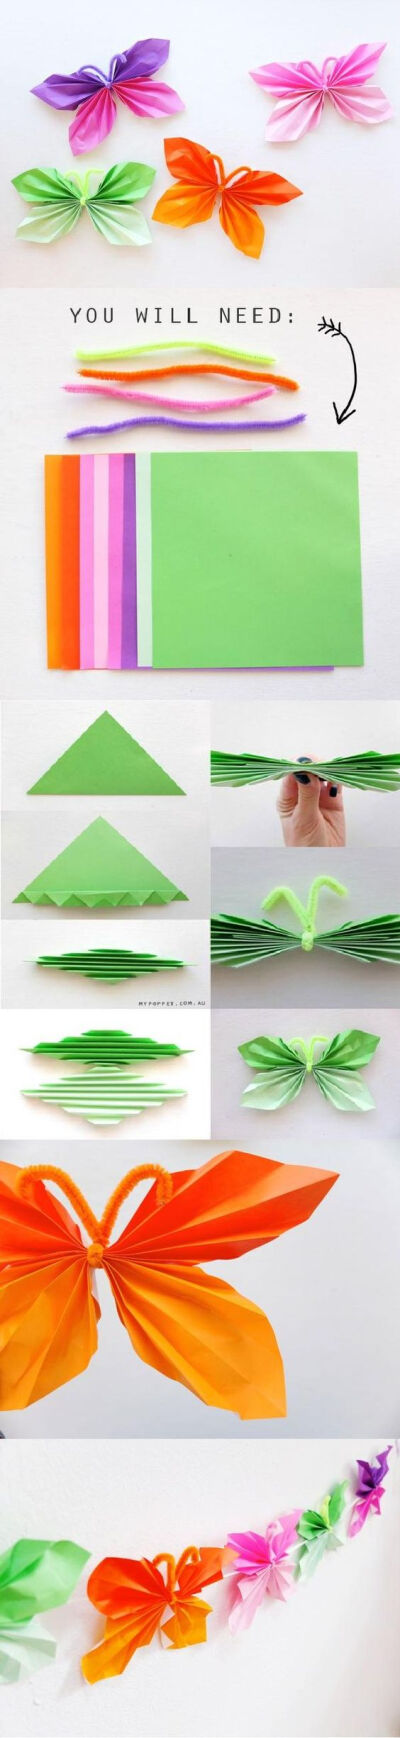 折纸 叶子 绿色 装饰